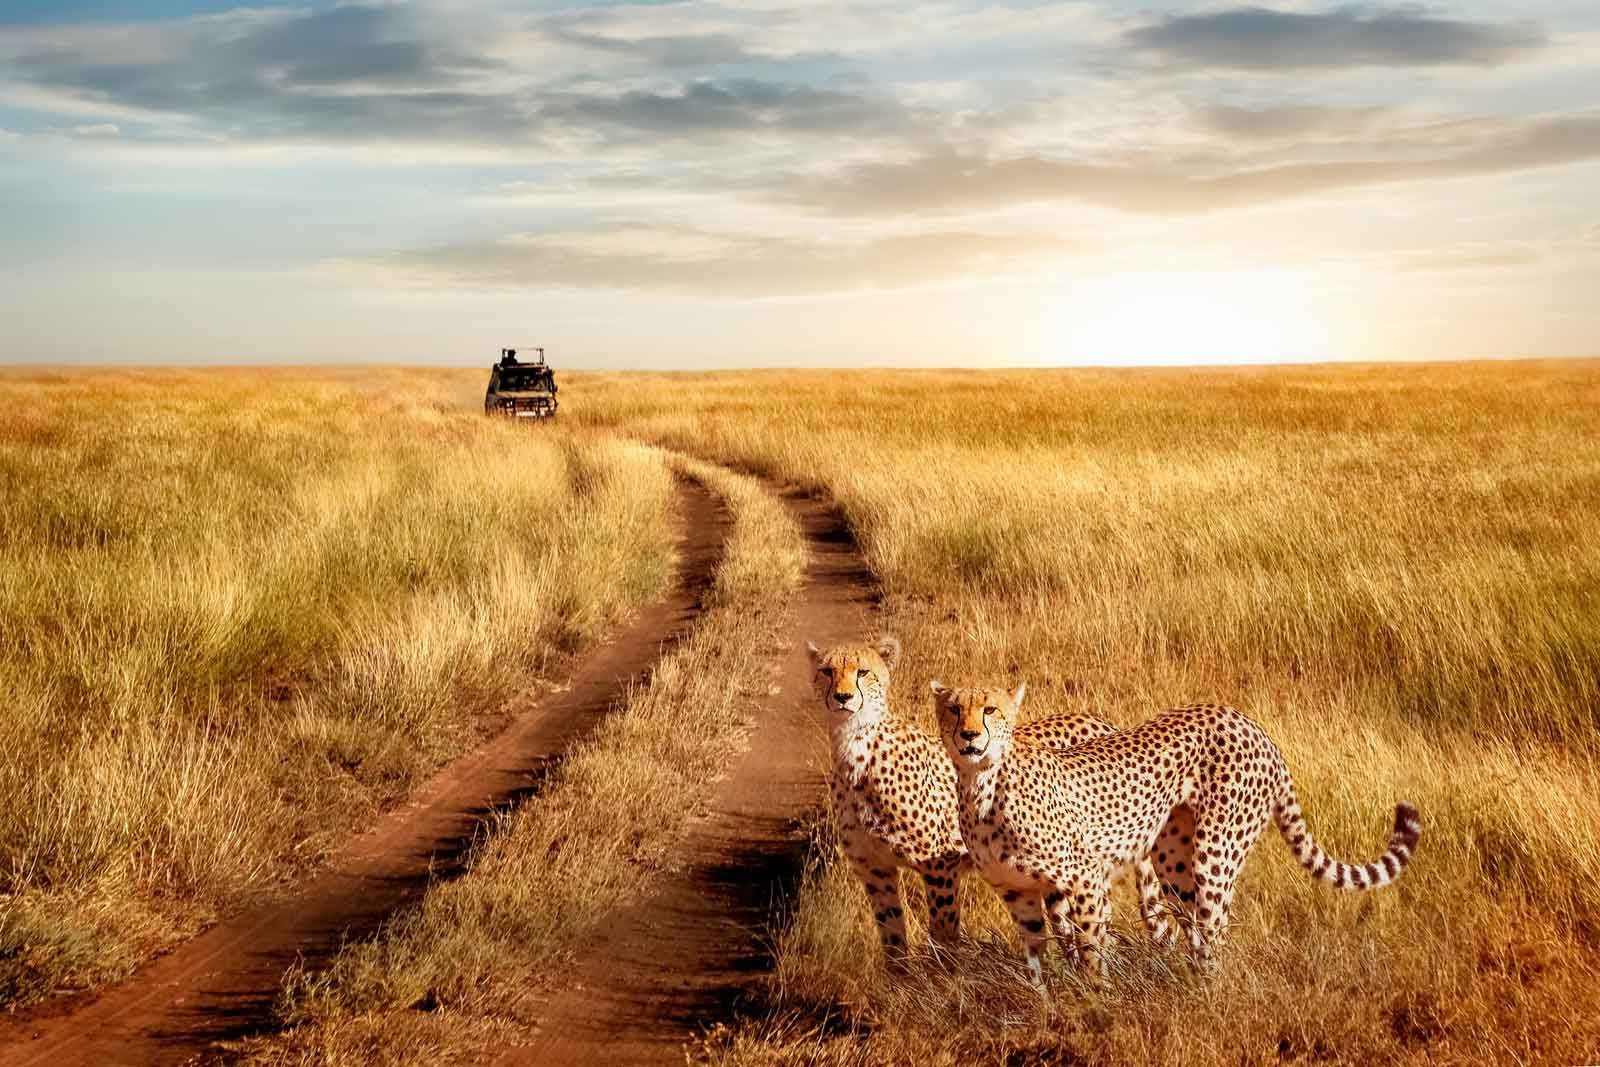 tanzania or kenya for safari